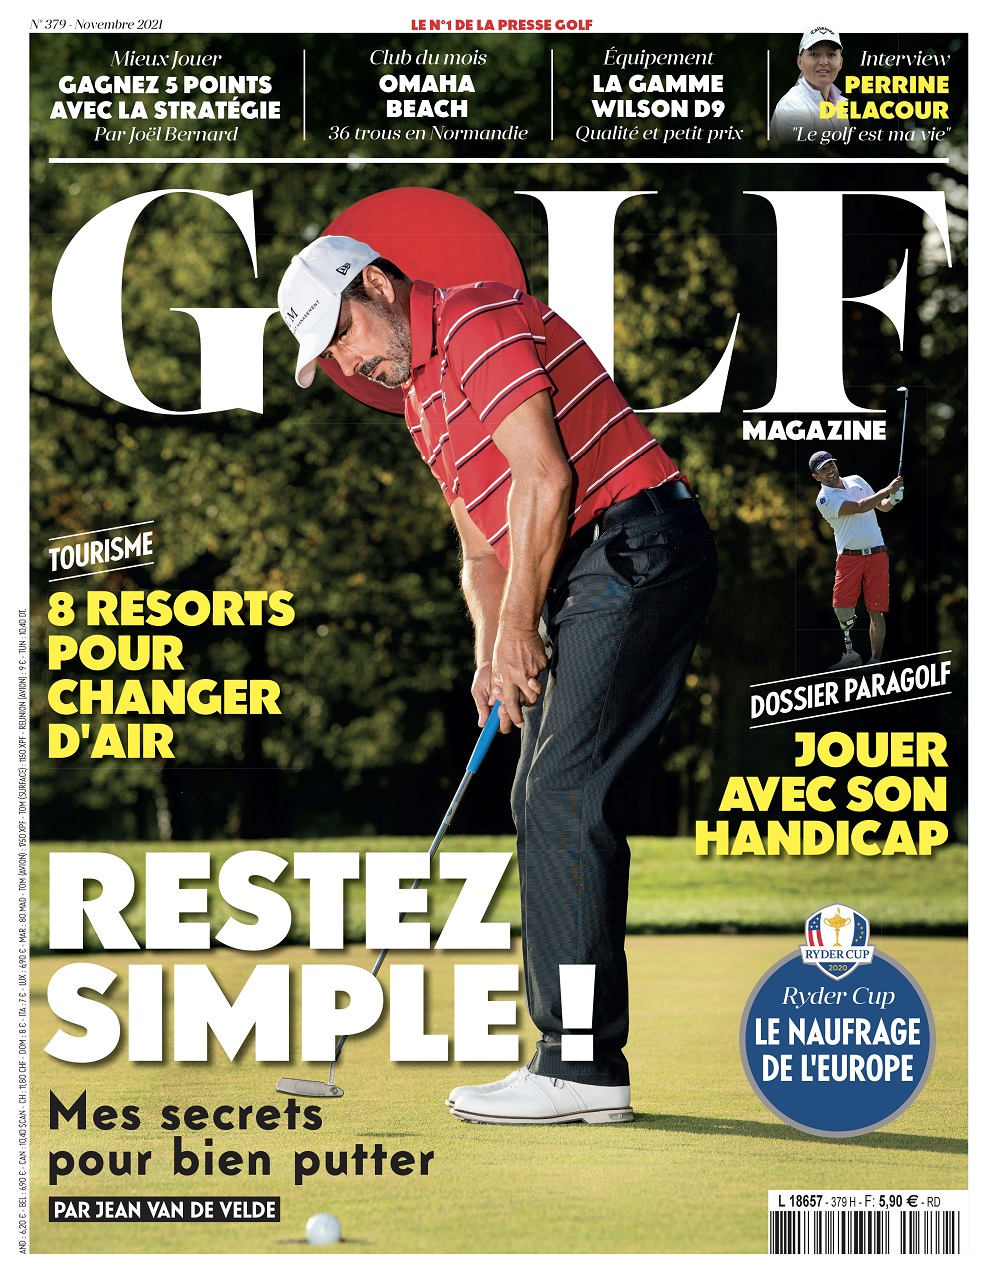 Le Golf Magazine n°379 est en kiosque !